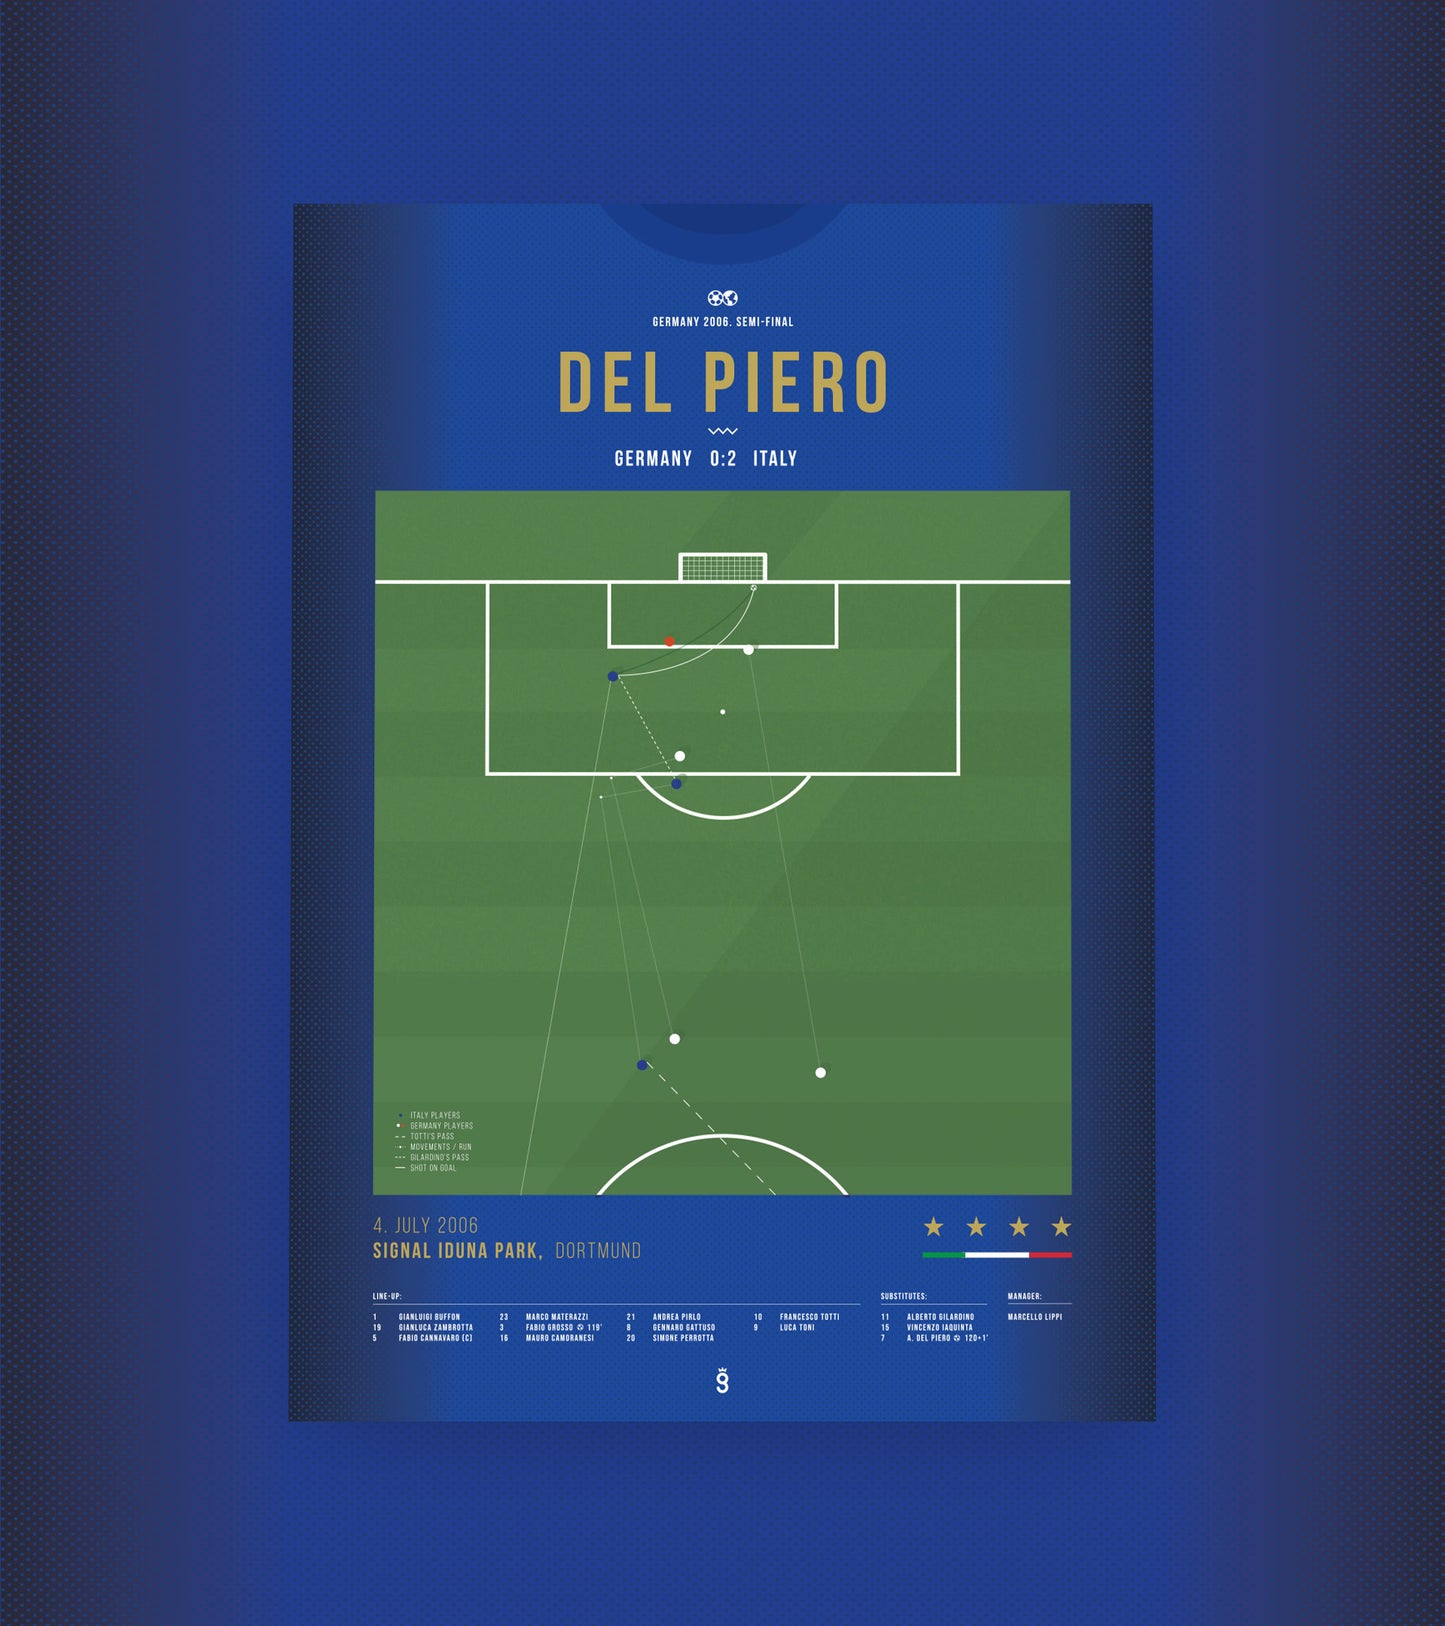 Del Piero vainqueur de l'Allemagne